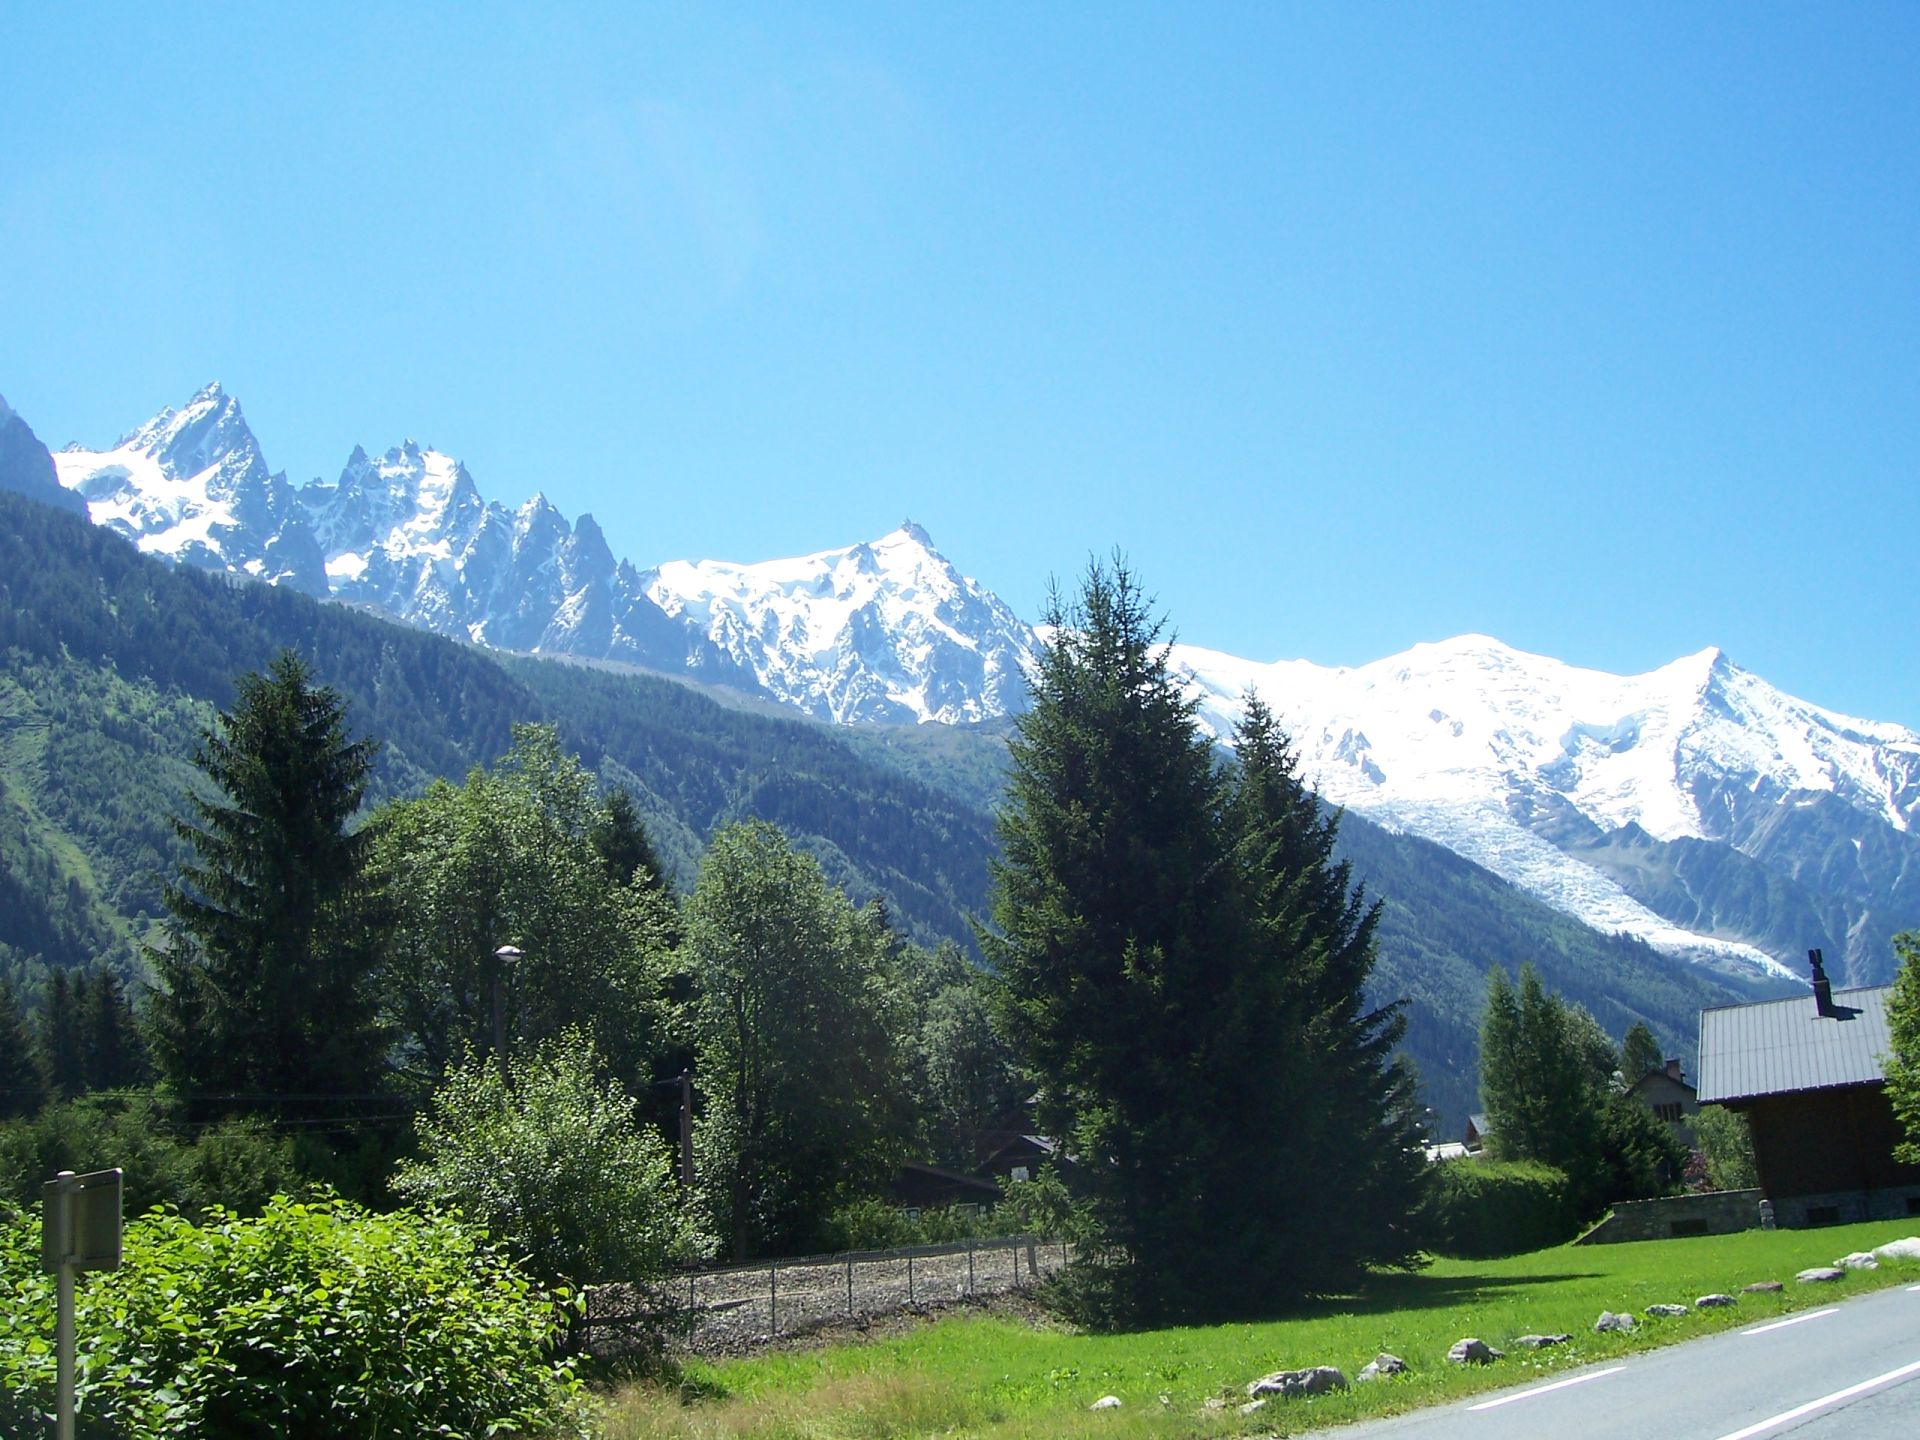 Chamonix_with_Alps_peaks